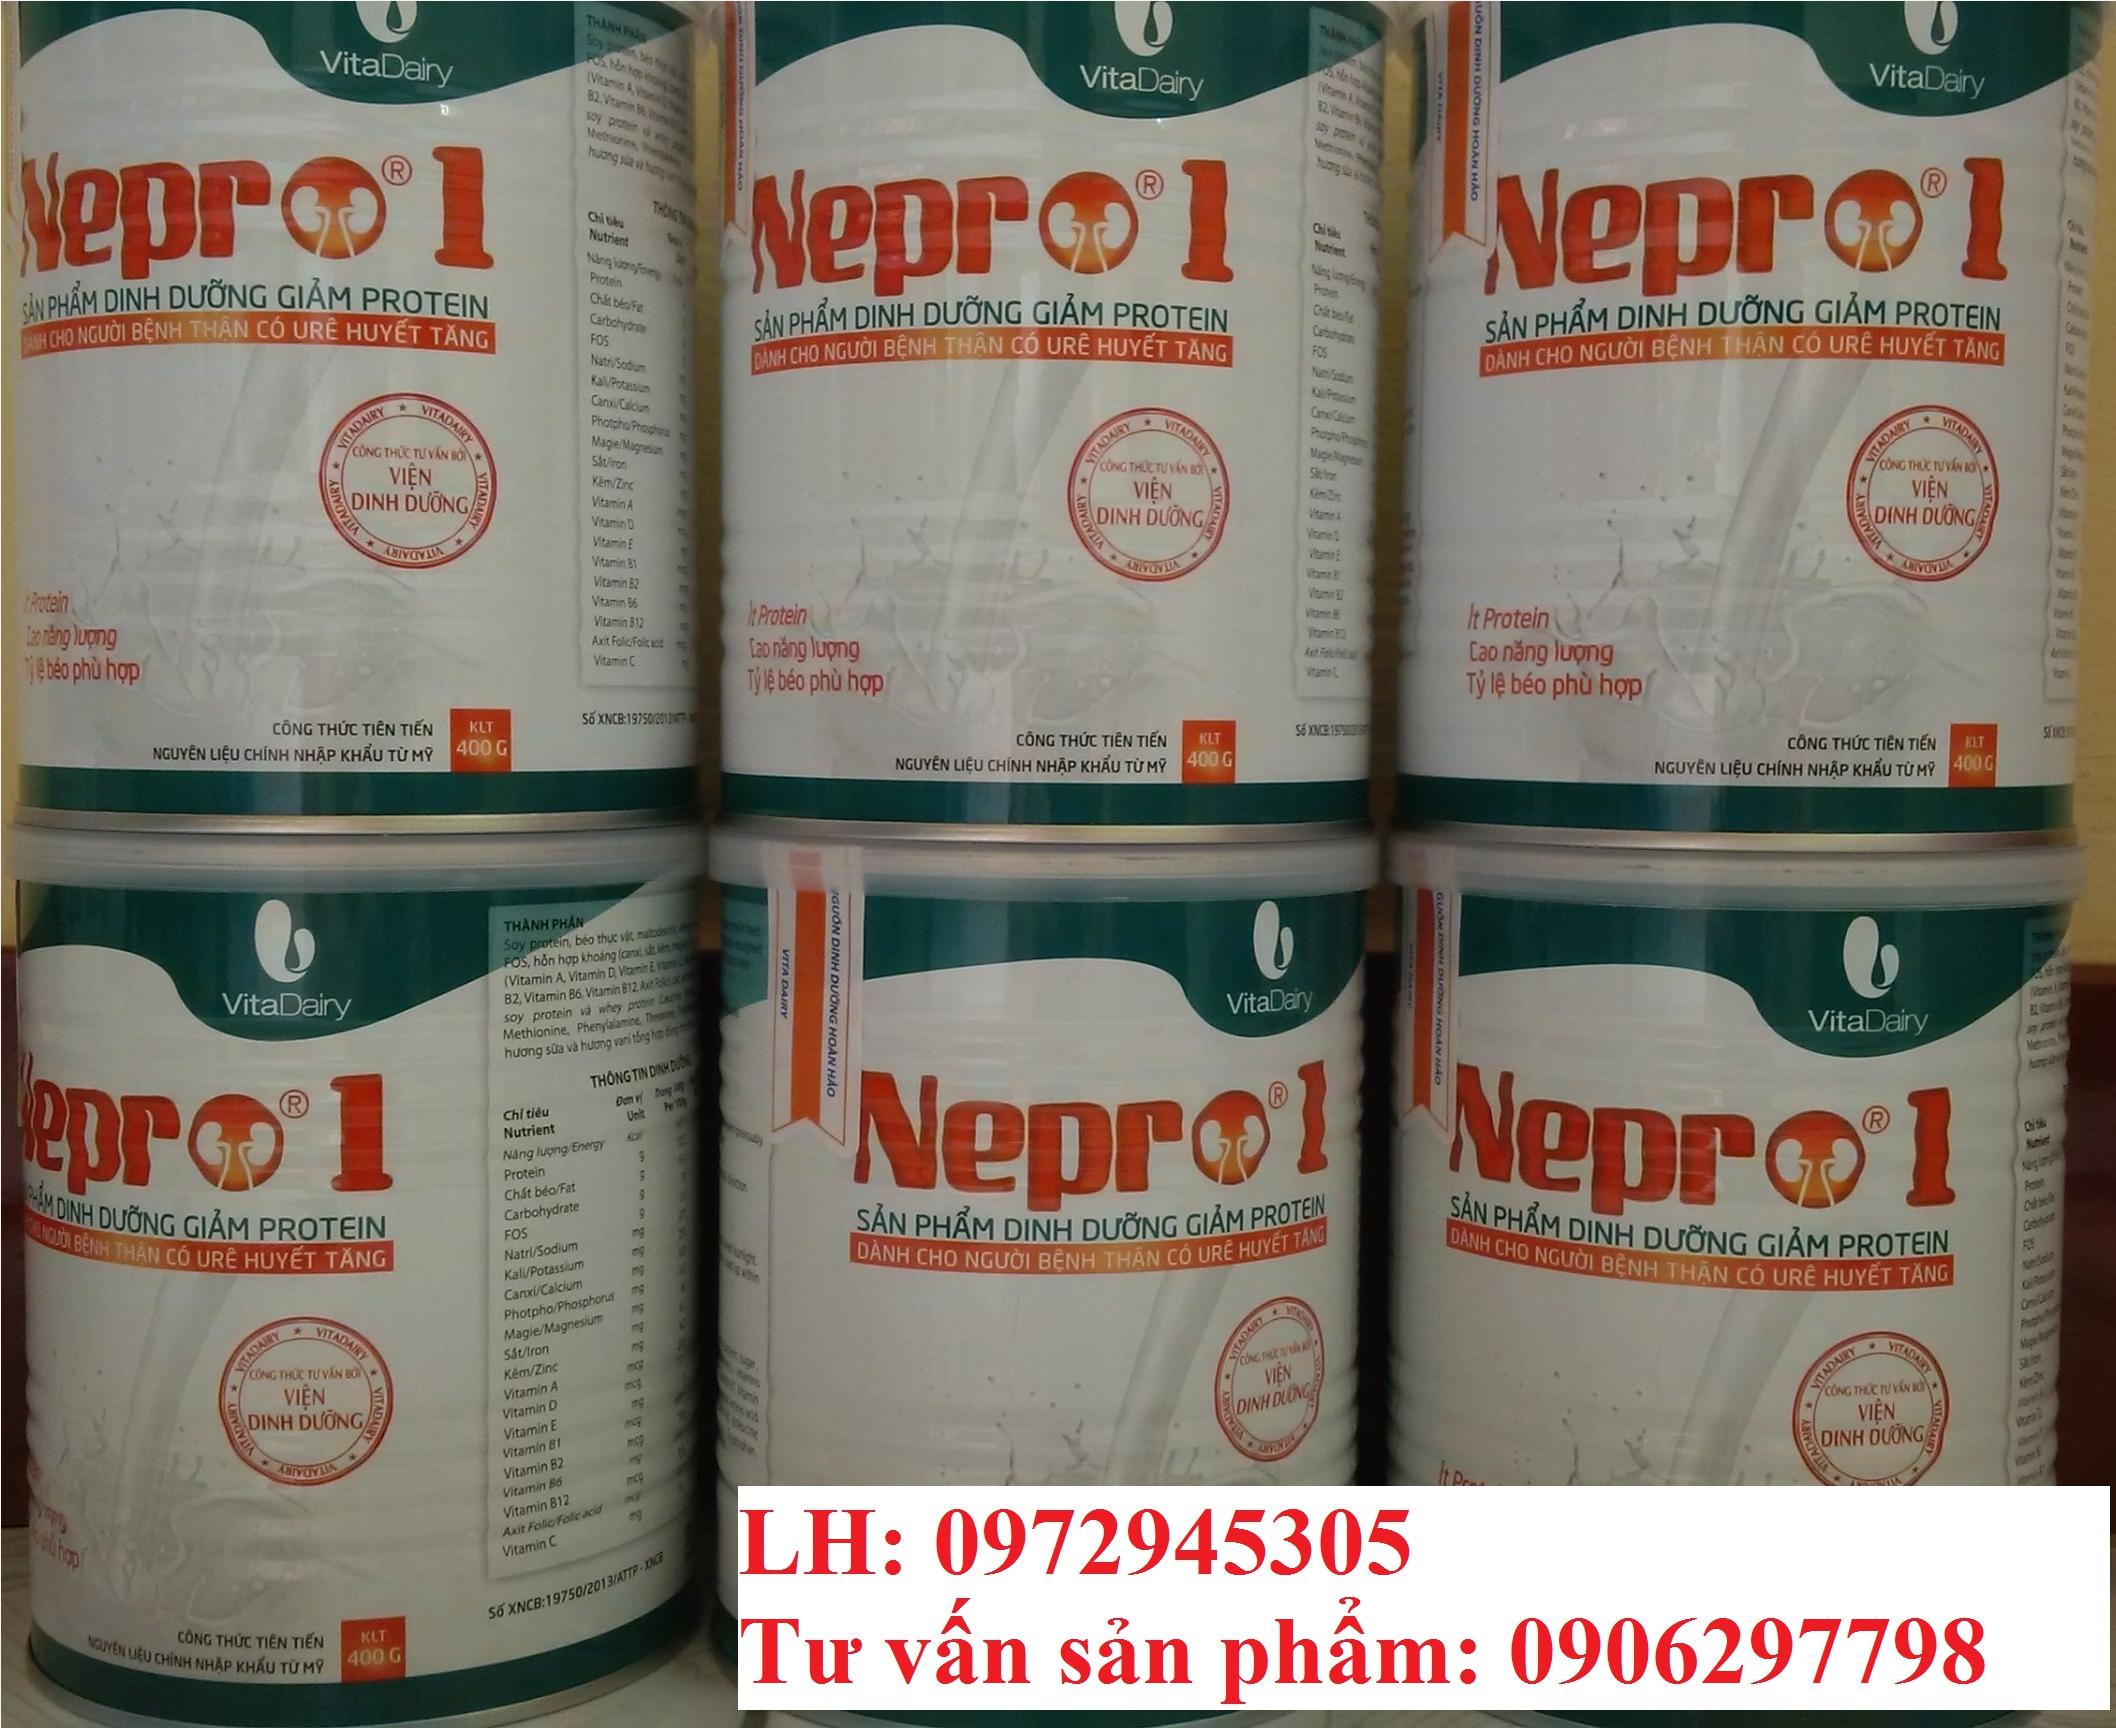 Sữa Nepro 1 cho bệnh nhân suy thận mua ở đâu, sữa Nepro 1 giá bao nhiêu?